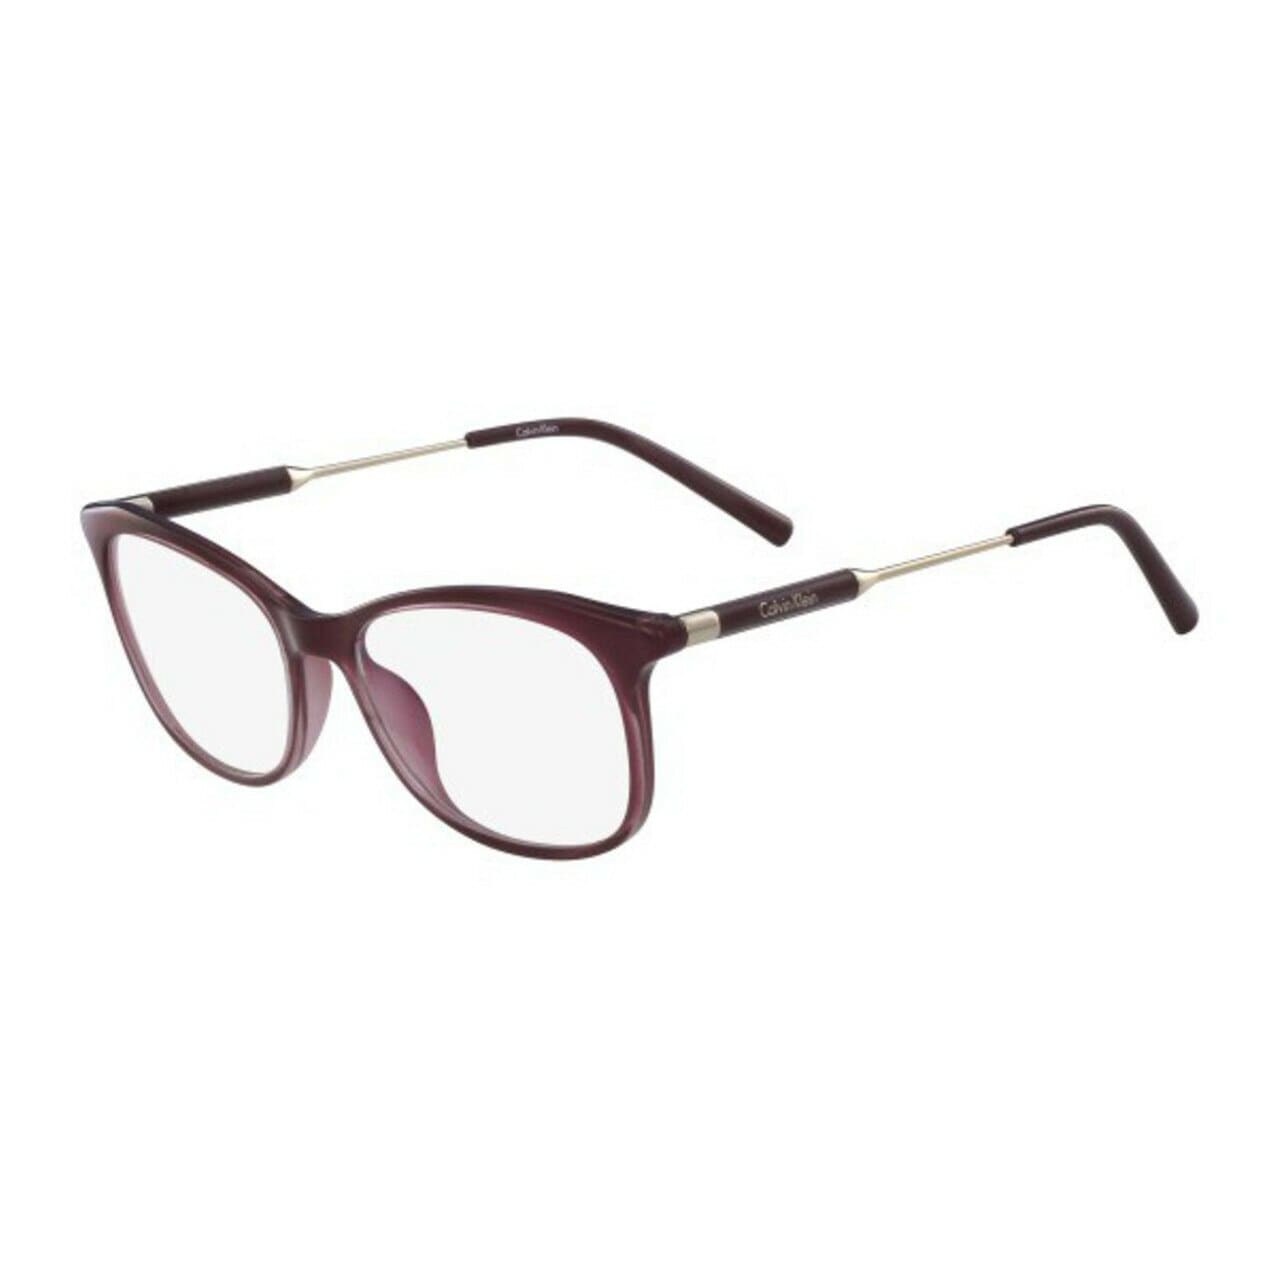 Calvin Klein CK-5976-604 Wine Square Women's Eyeglasses Frames 750779112021